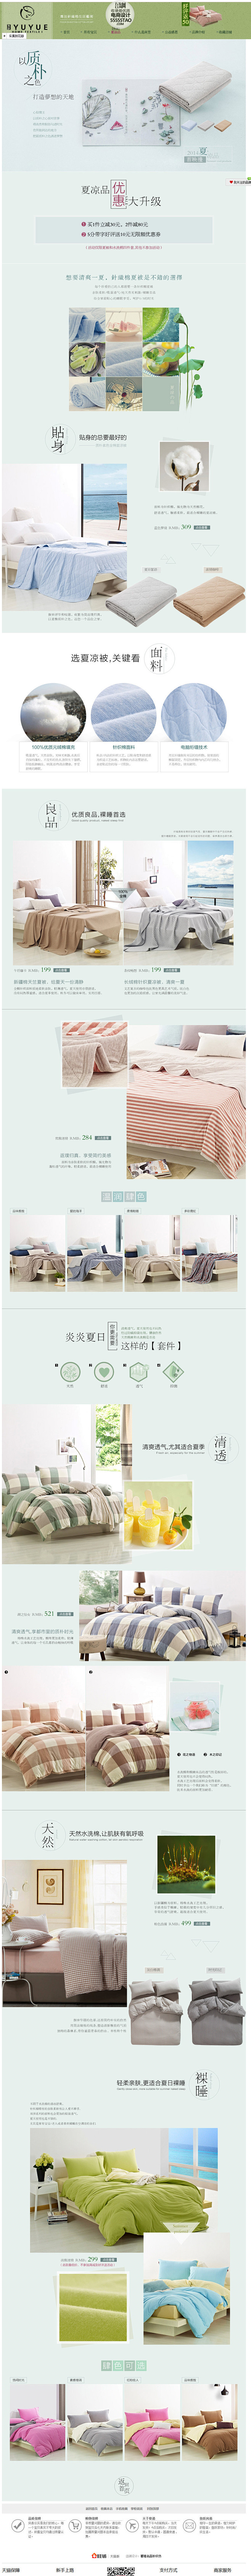 家具在家居专题 床单  电商设计#网页设...